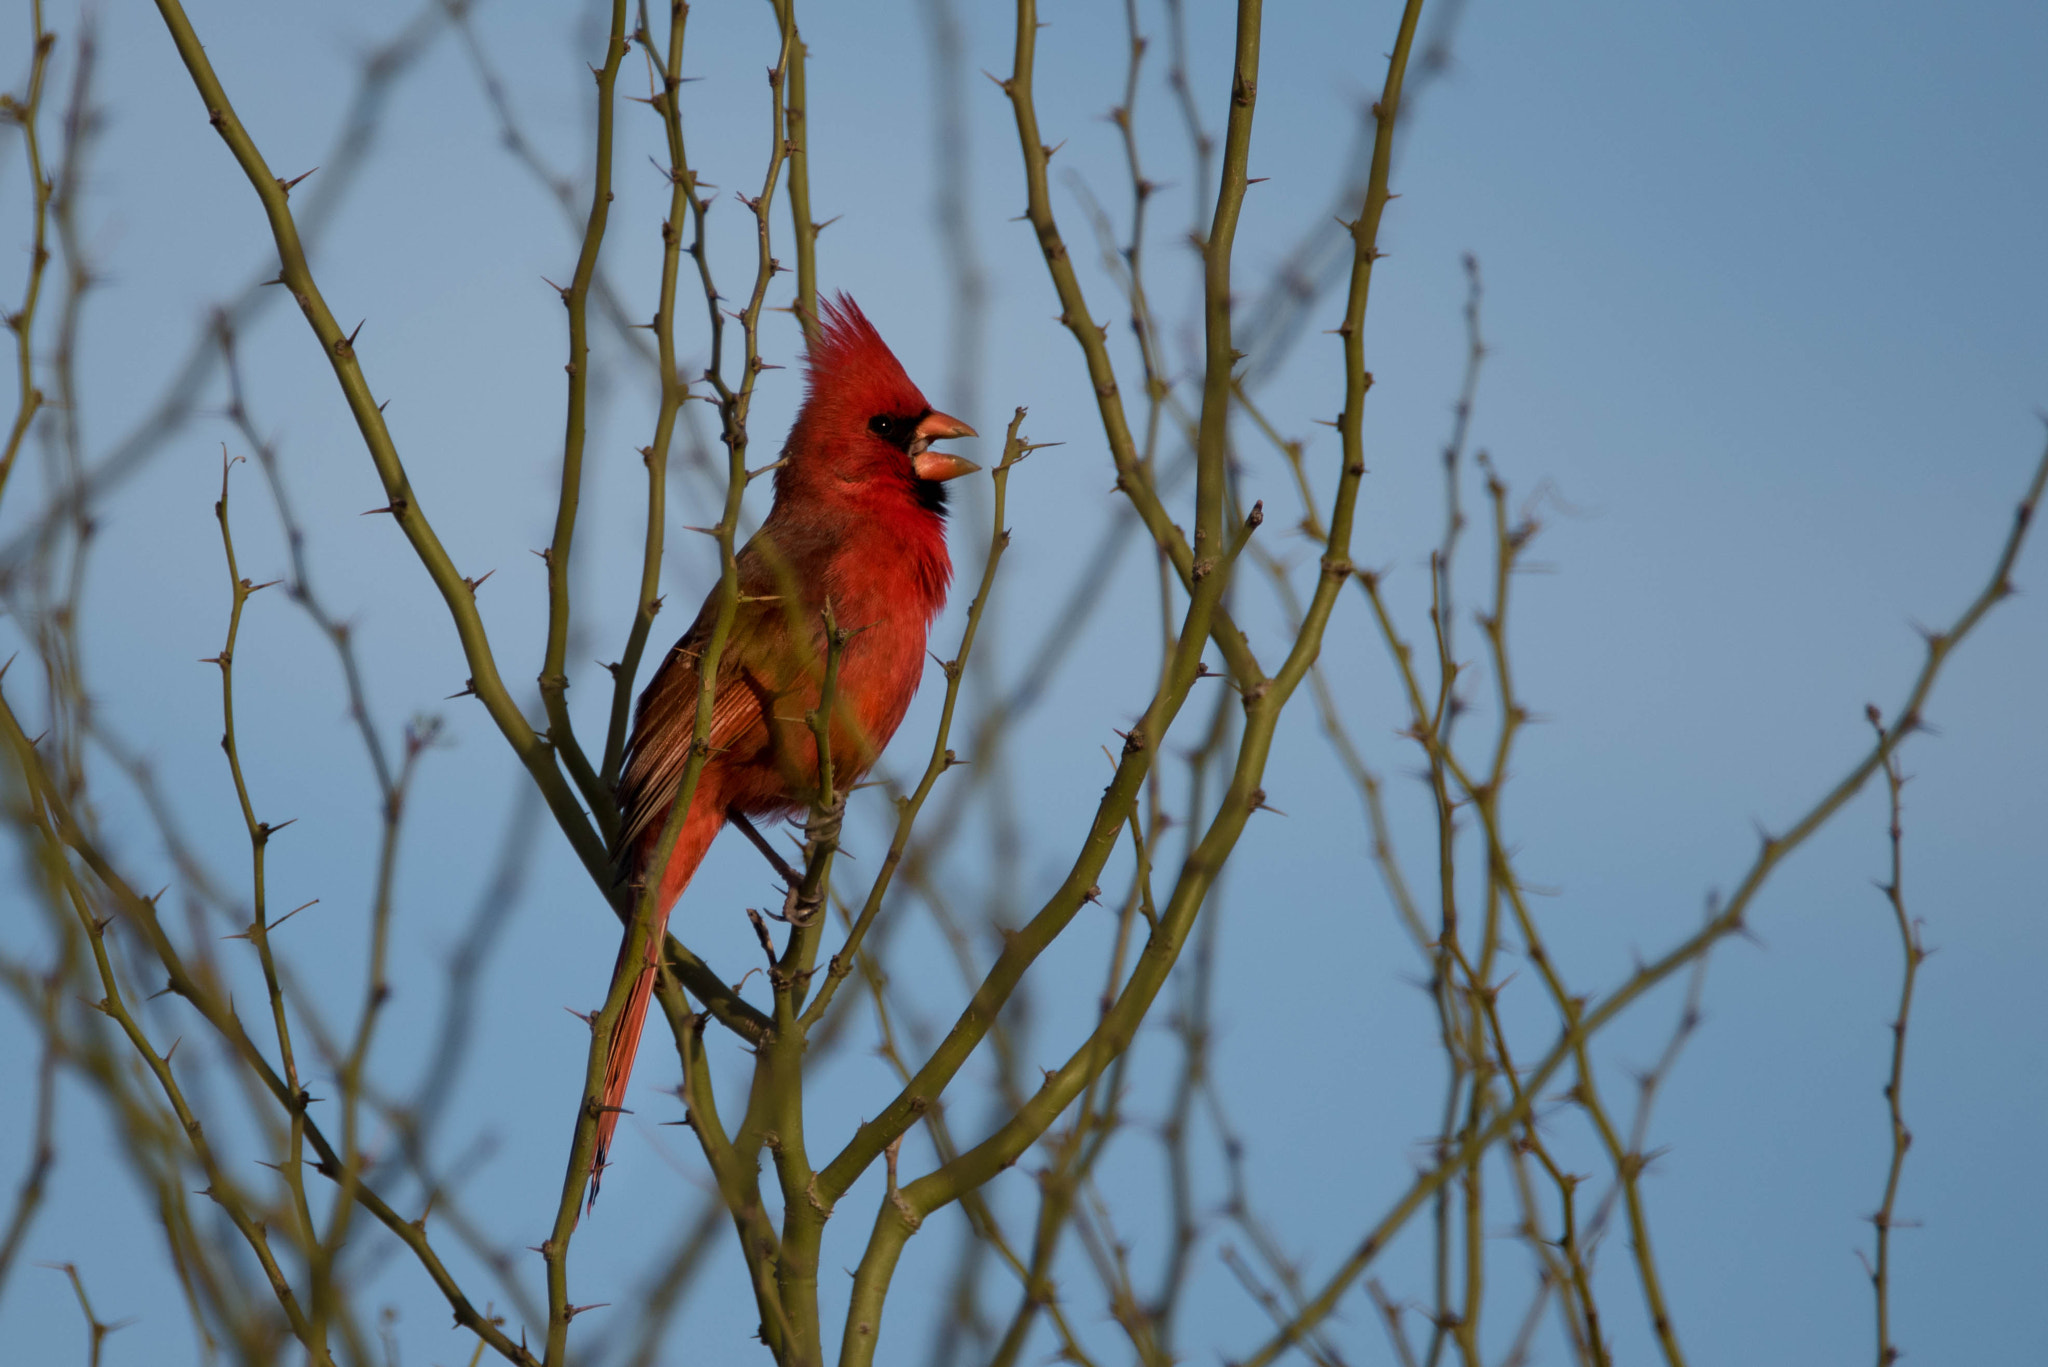 Nikon D810 sample photo. A cardinals spring photography